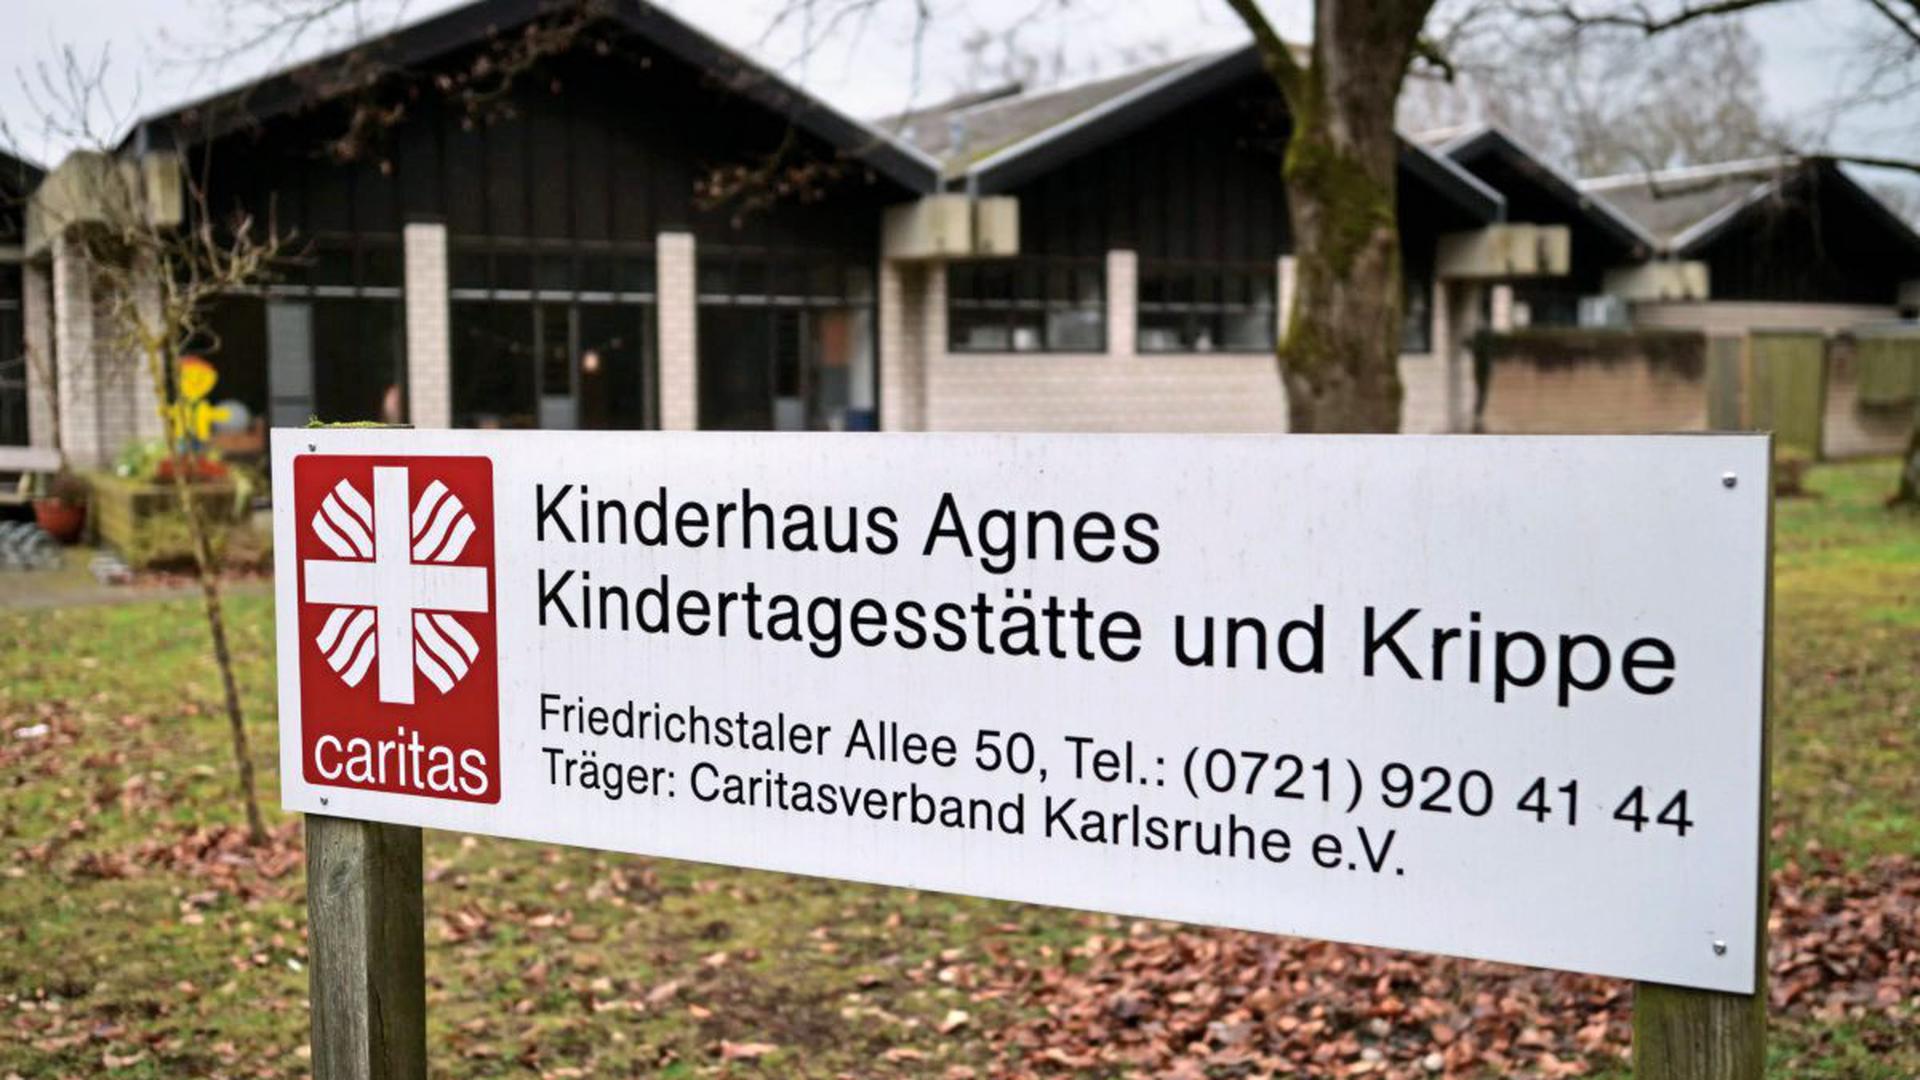 Bis Sommer 2022 dürfen die 90 Kinder von St. Agnes im Waldheim bleiben. Danach muss die Caritas das Gebäude räumen.